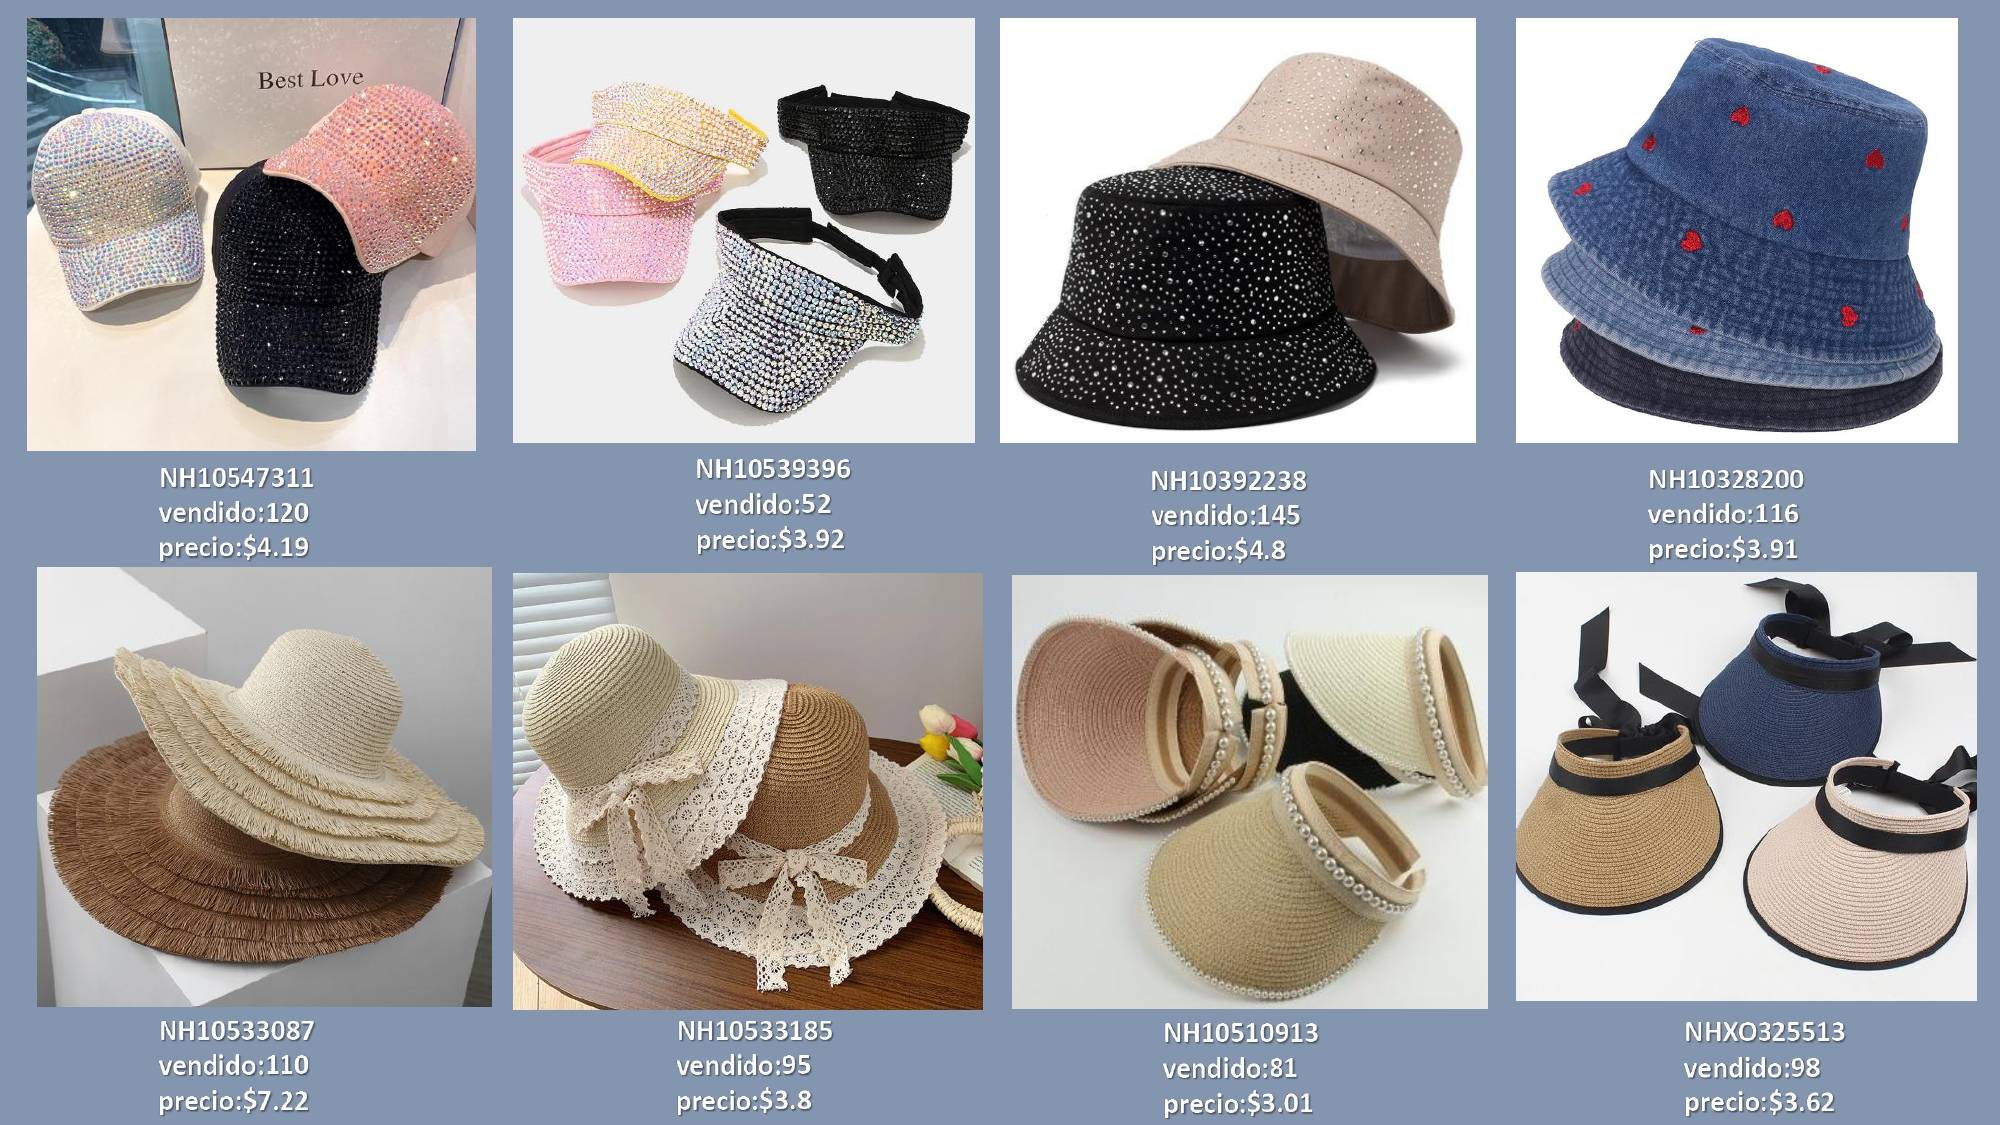 Los sombreros son uno de los accesorios de moda imprescindibles para las mujeres.